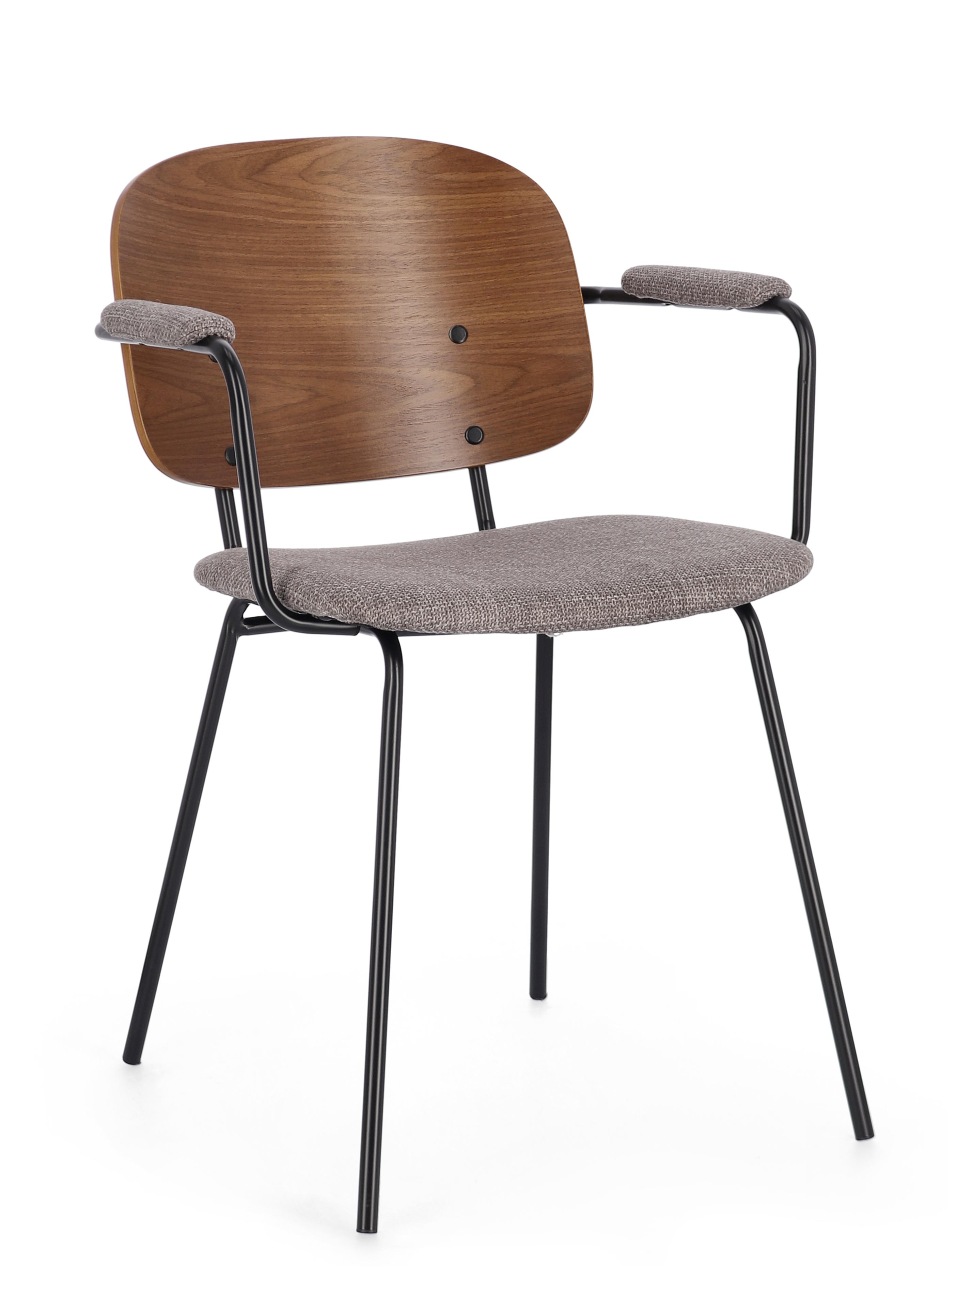 Der Esszimmerstuhl Sienna überzeugt mit seinem modernen Stil. Gefertigt wurde er aus Stoff, welcher einen grauen Farbton besitzt. Das Gestell ist aus Metall und hat eine schwarze Farbe. Der Stuhl besitzt eine Sitzhöhe von 48 cm.